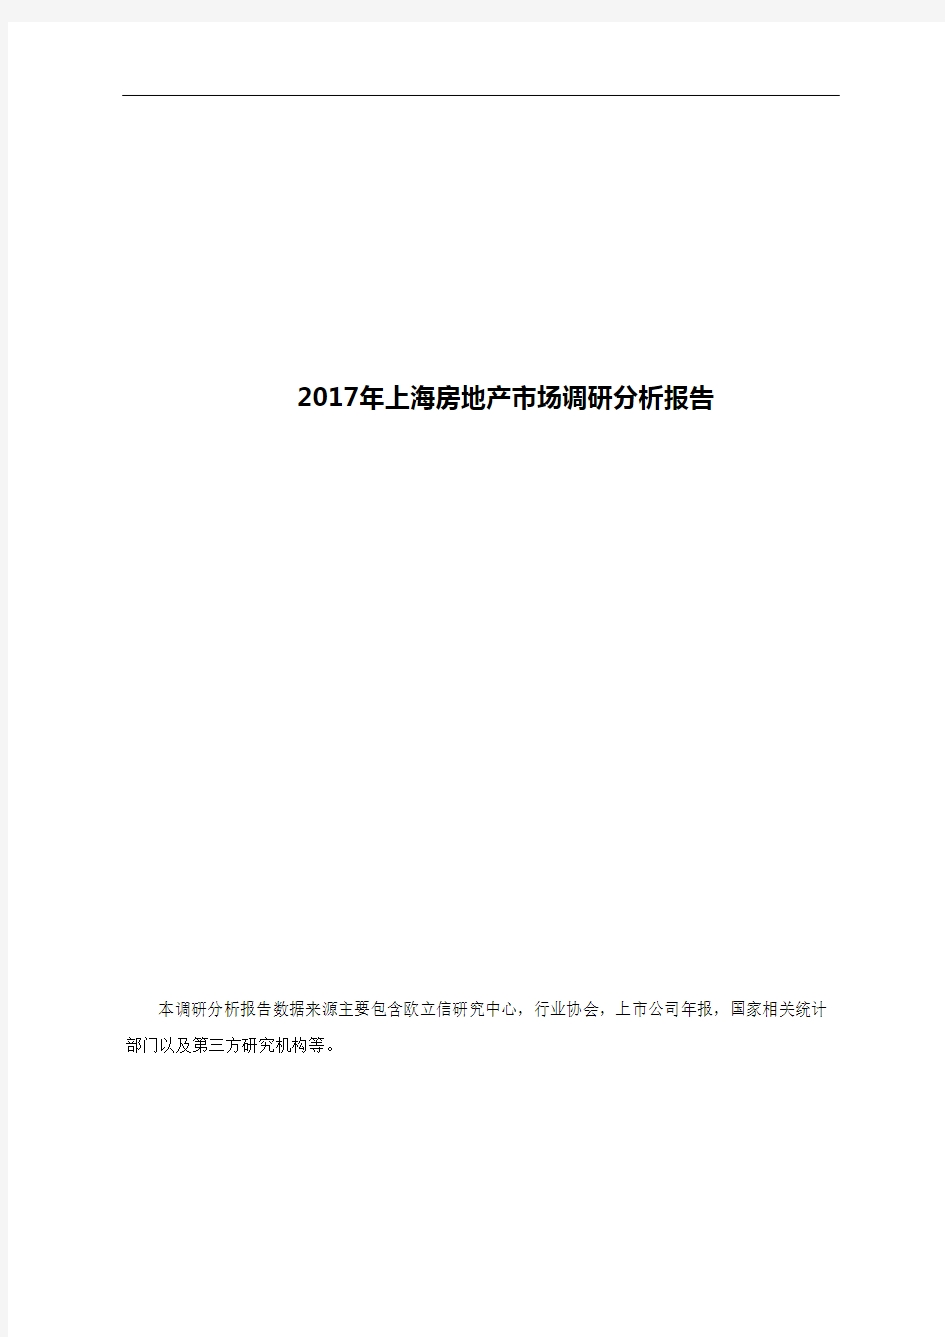 2017年上海房地产市场调研分析报告